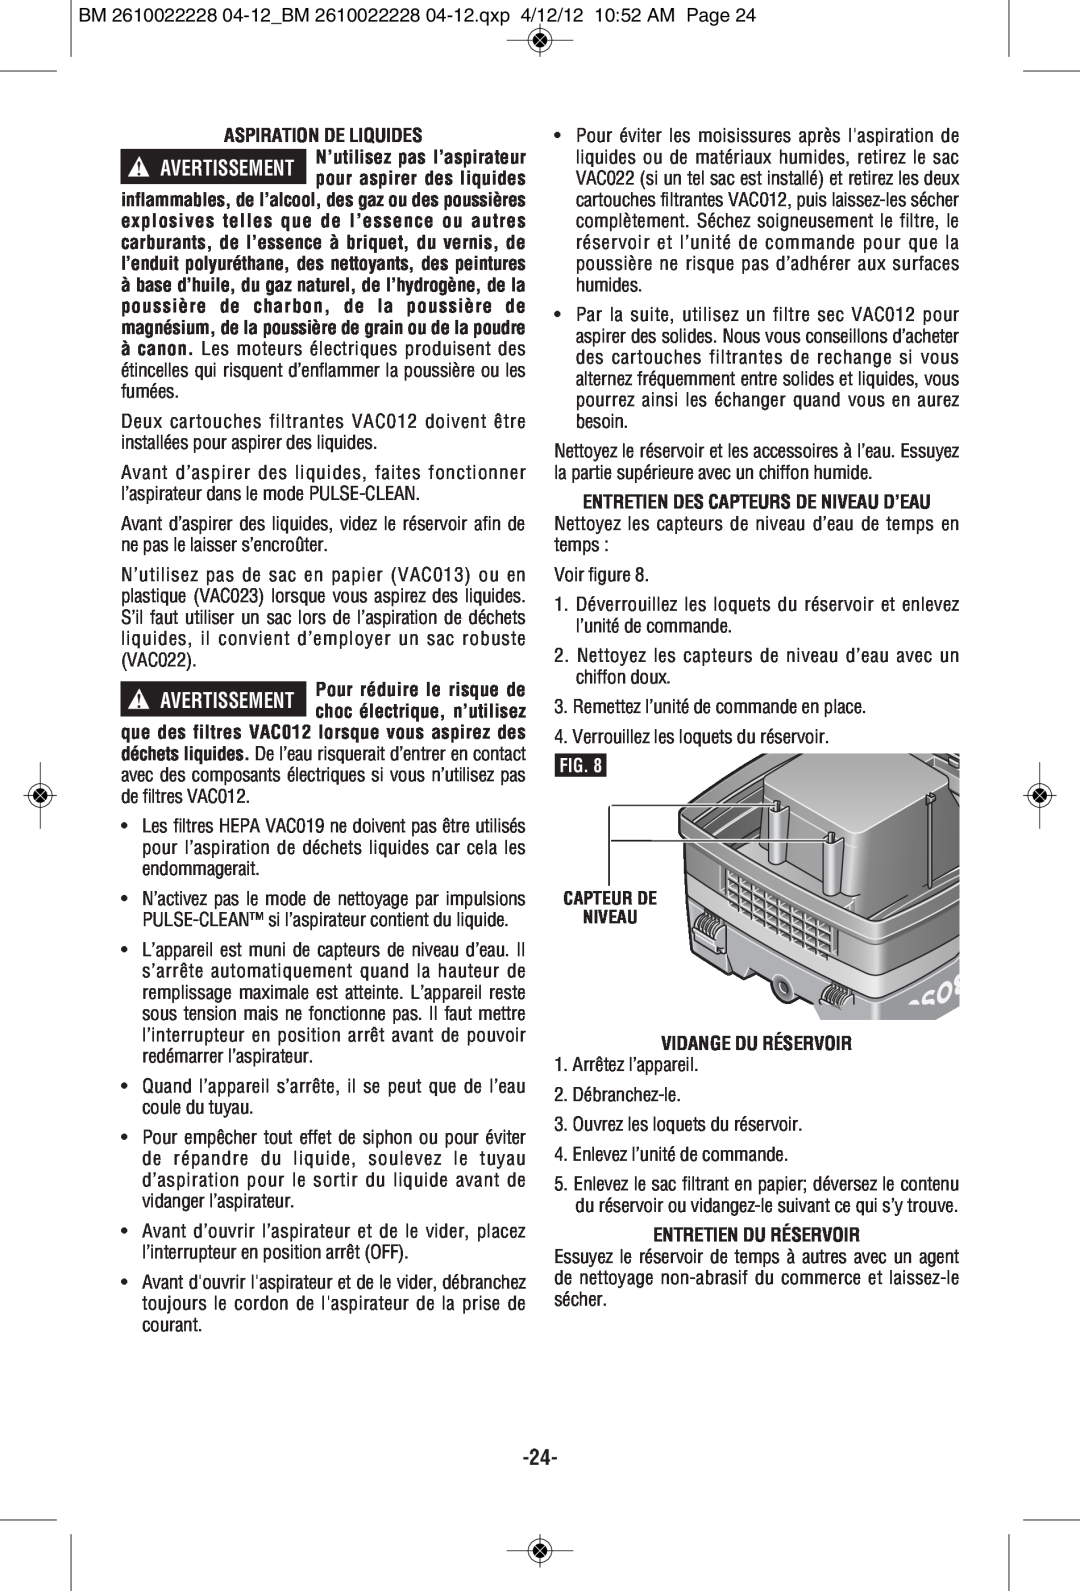 Bosch Power Tools 3931A-PB manual Entretien Des Capteurs De Niveau D’Eau, Vidange Du Réservoir, Entretien Du Réservoir 